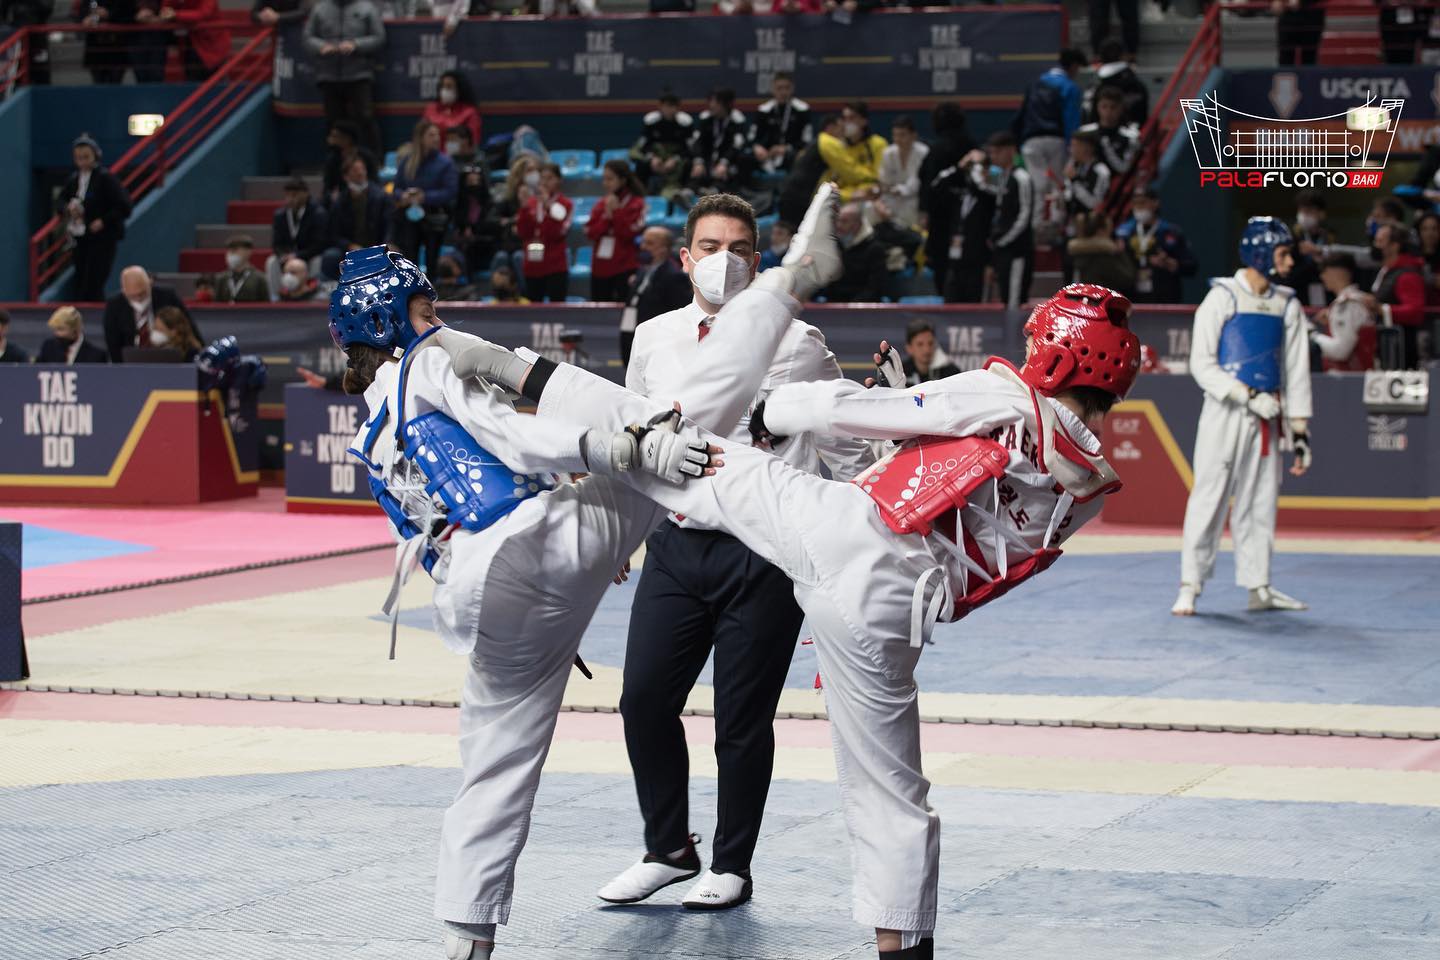 La carica dei mille (e oltre) mini-taekwondoki al Torneo Kim e Liu Sud 2023: l’11 e il 12 marzo al Palaflorio il brivido dell’agonismo per tanti piccoli atleti